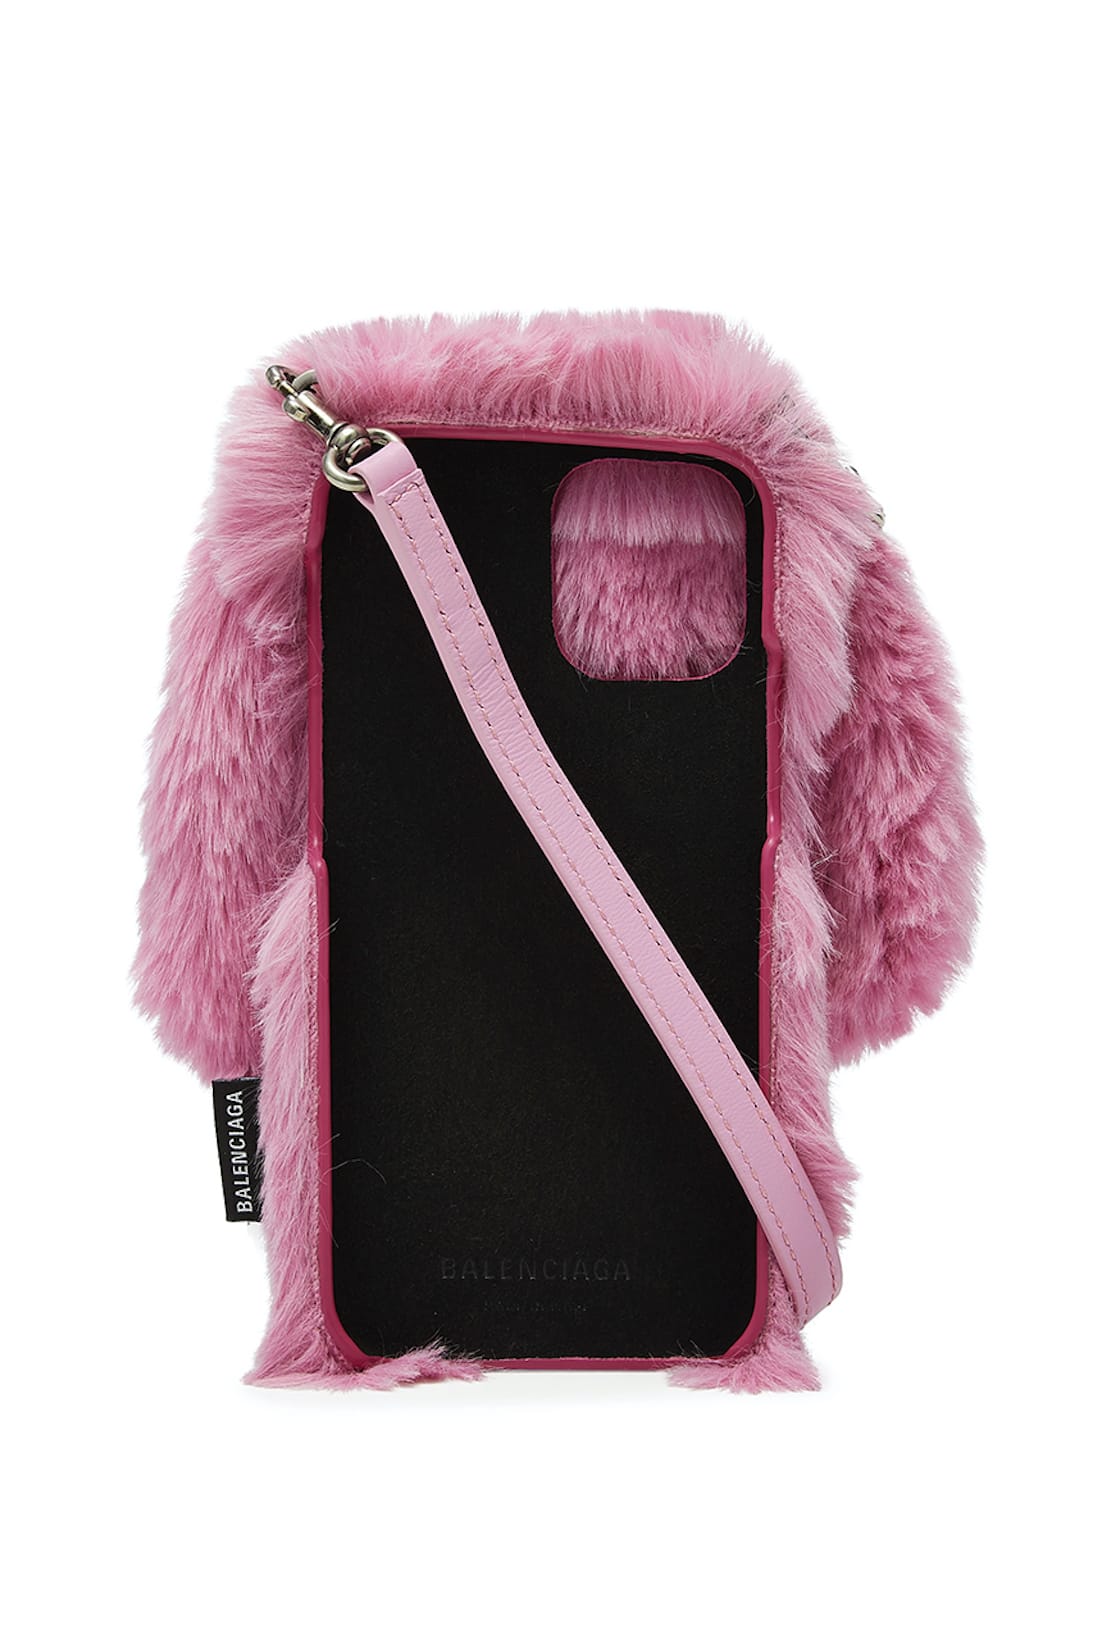 Balenciaga Pink Bunny iPhone & AirPods Cases Drop | HYPEBAE